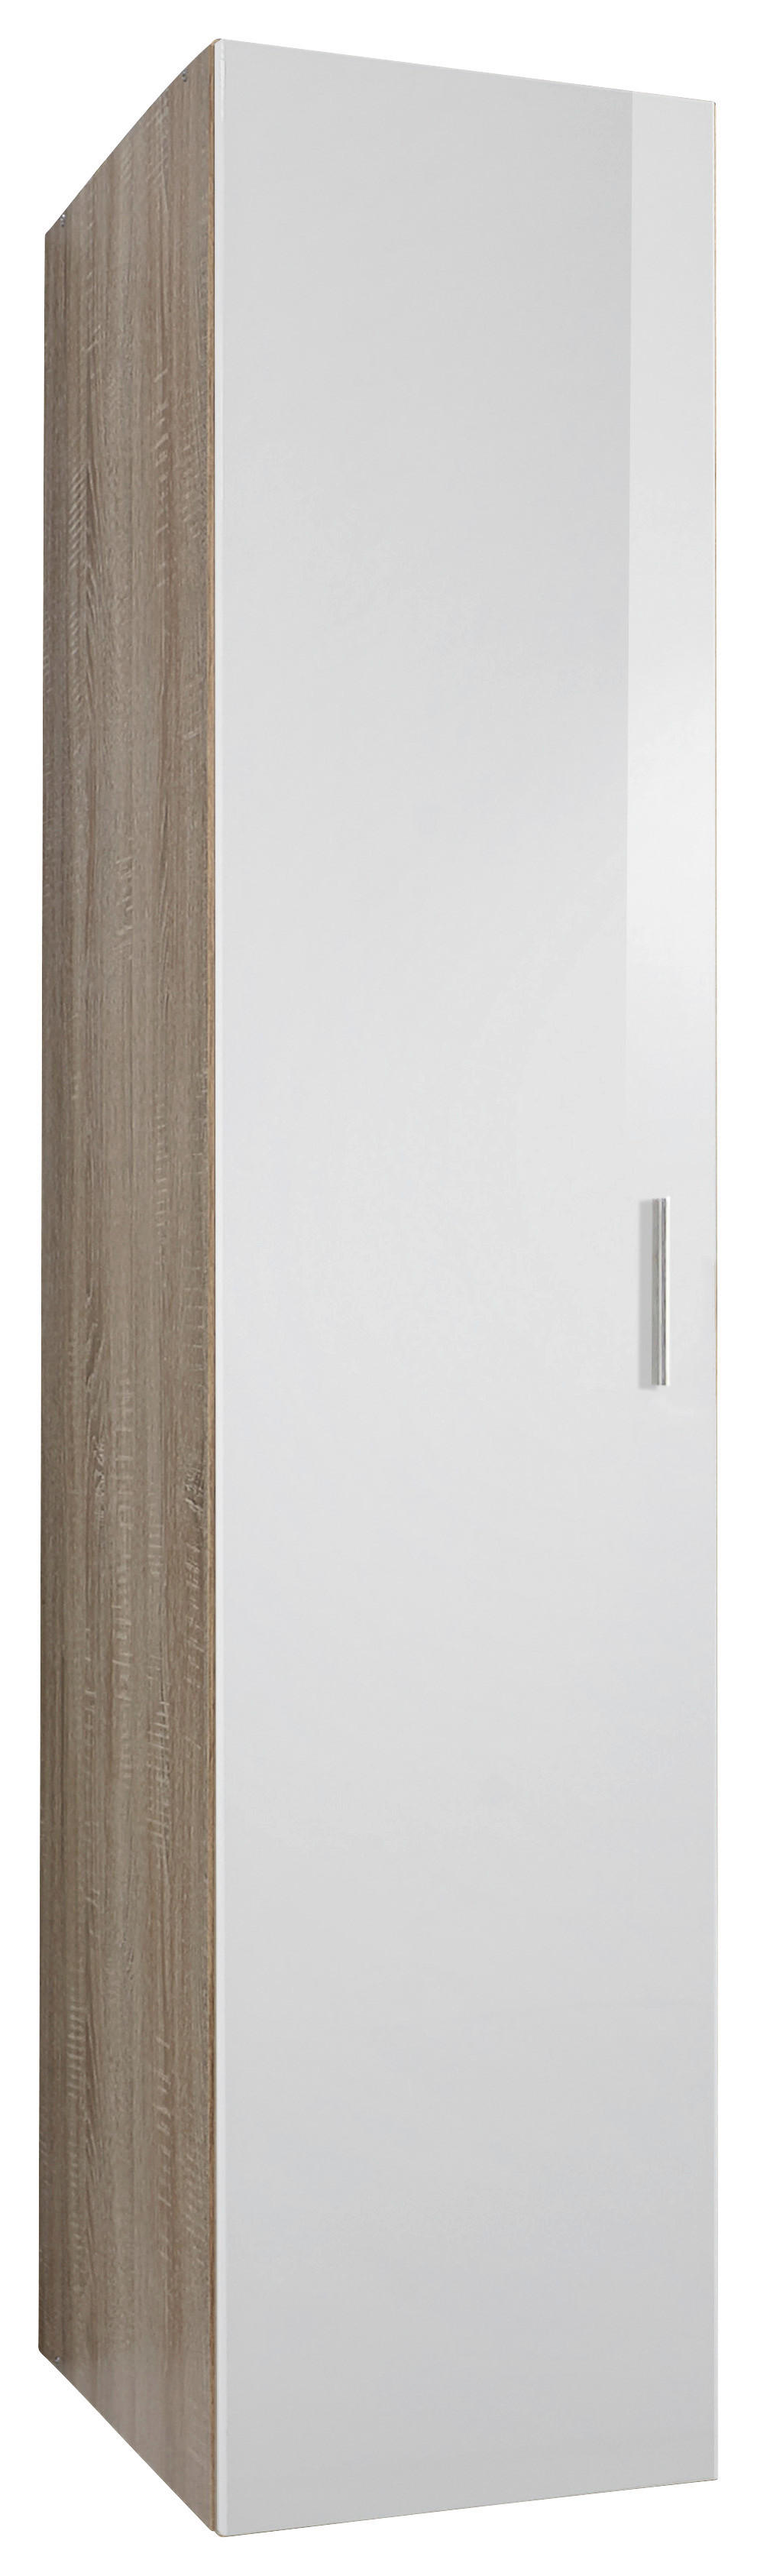 Xora SKŘÍŇ NA ODĚV, bílá, barvy dubu, 45/185/54 cm - bílá,barvy dubu - kompozitní dřevo